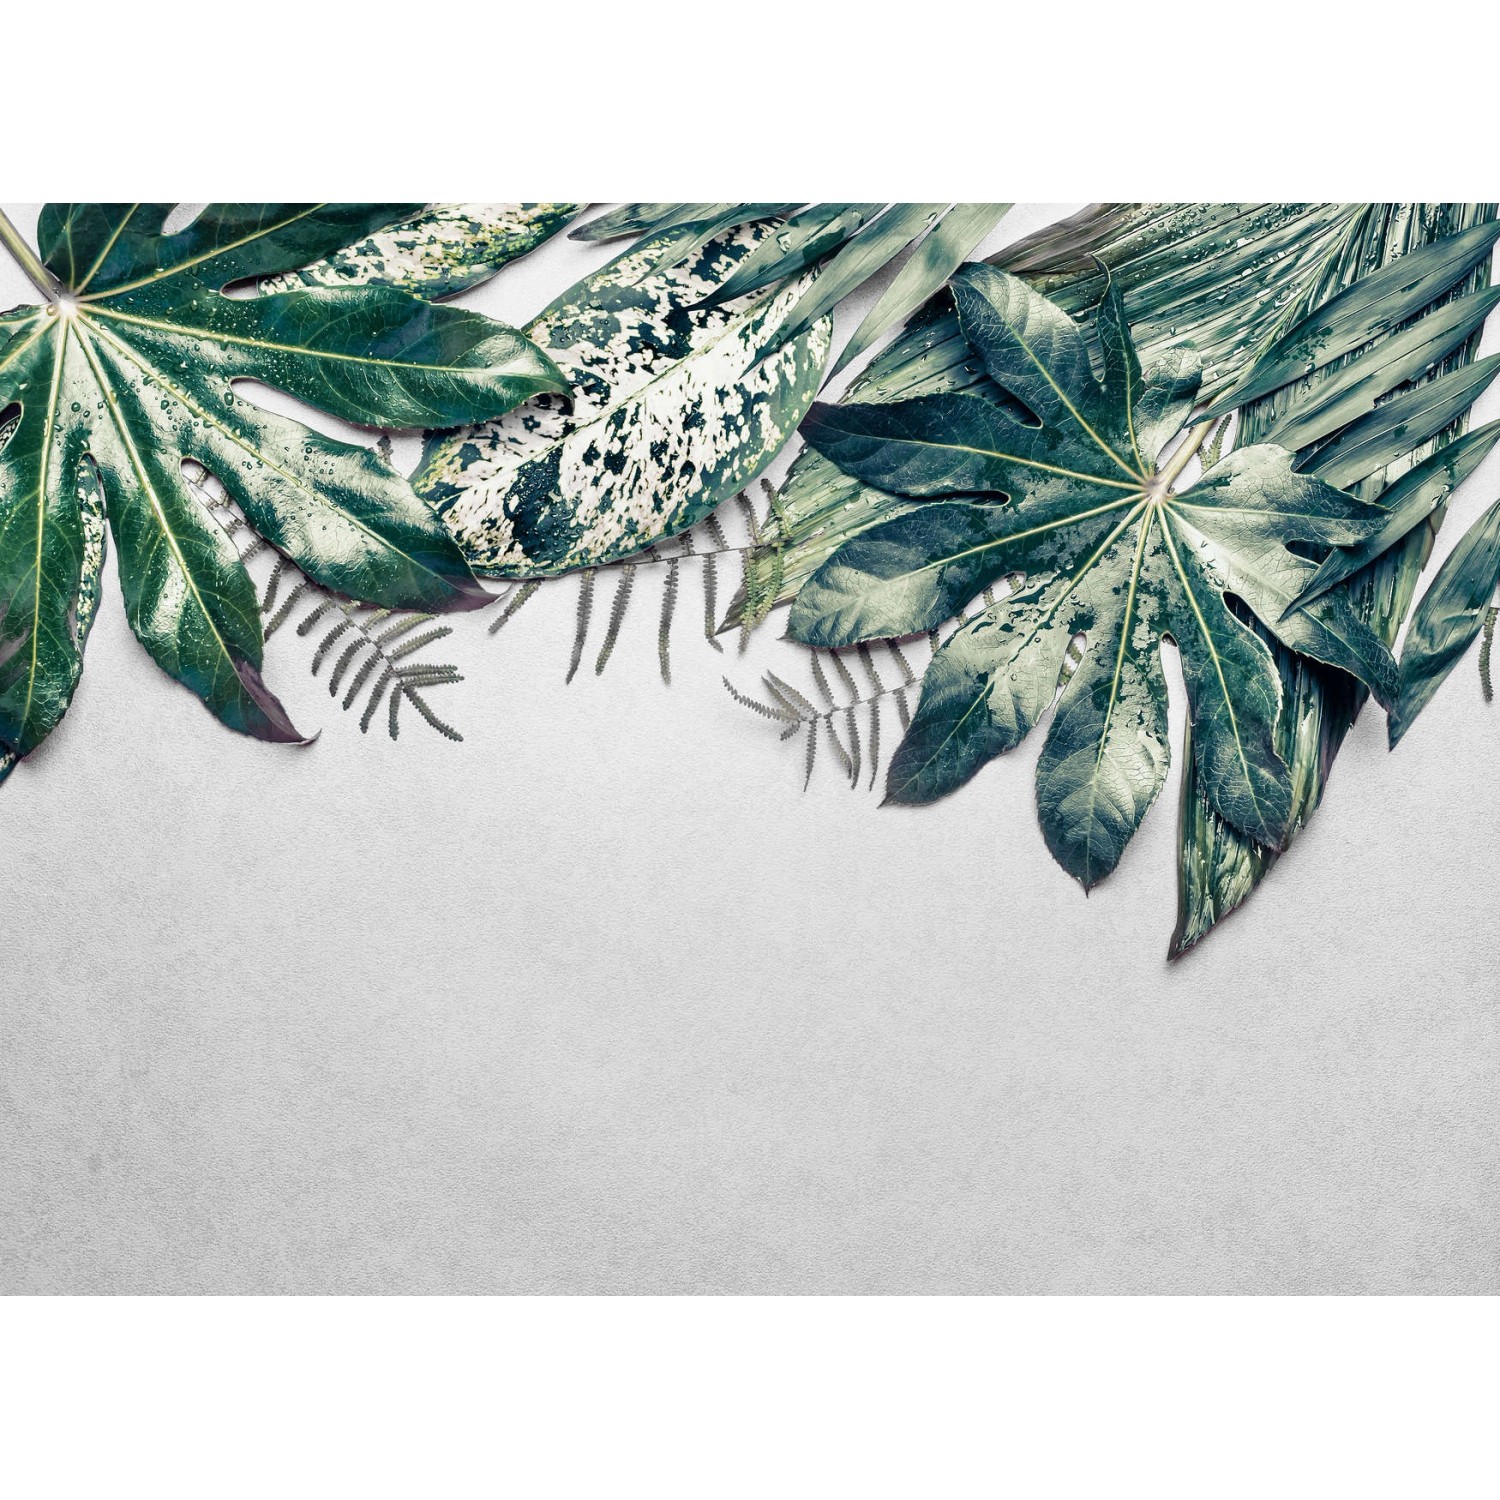 Fototapete Blätter Palmen Grün Grau 3,50 m x 2,55 m FSC® von -